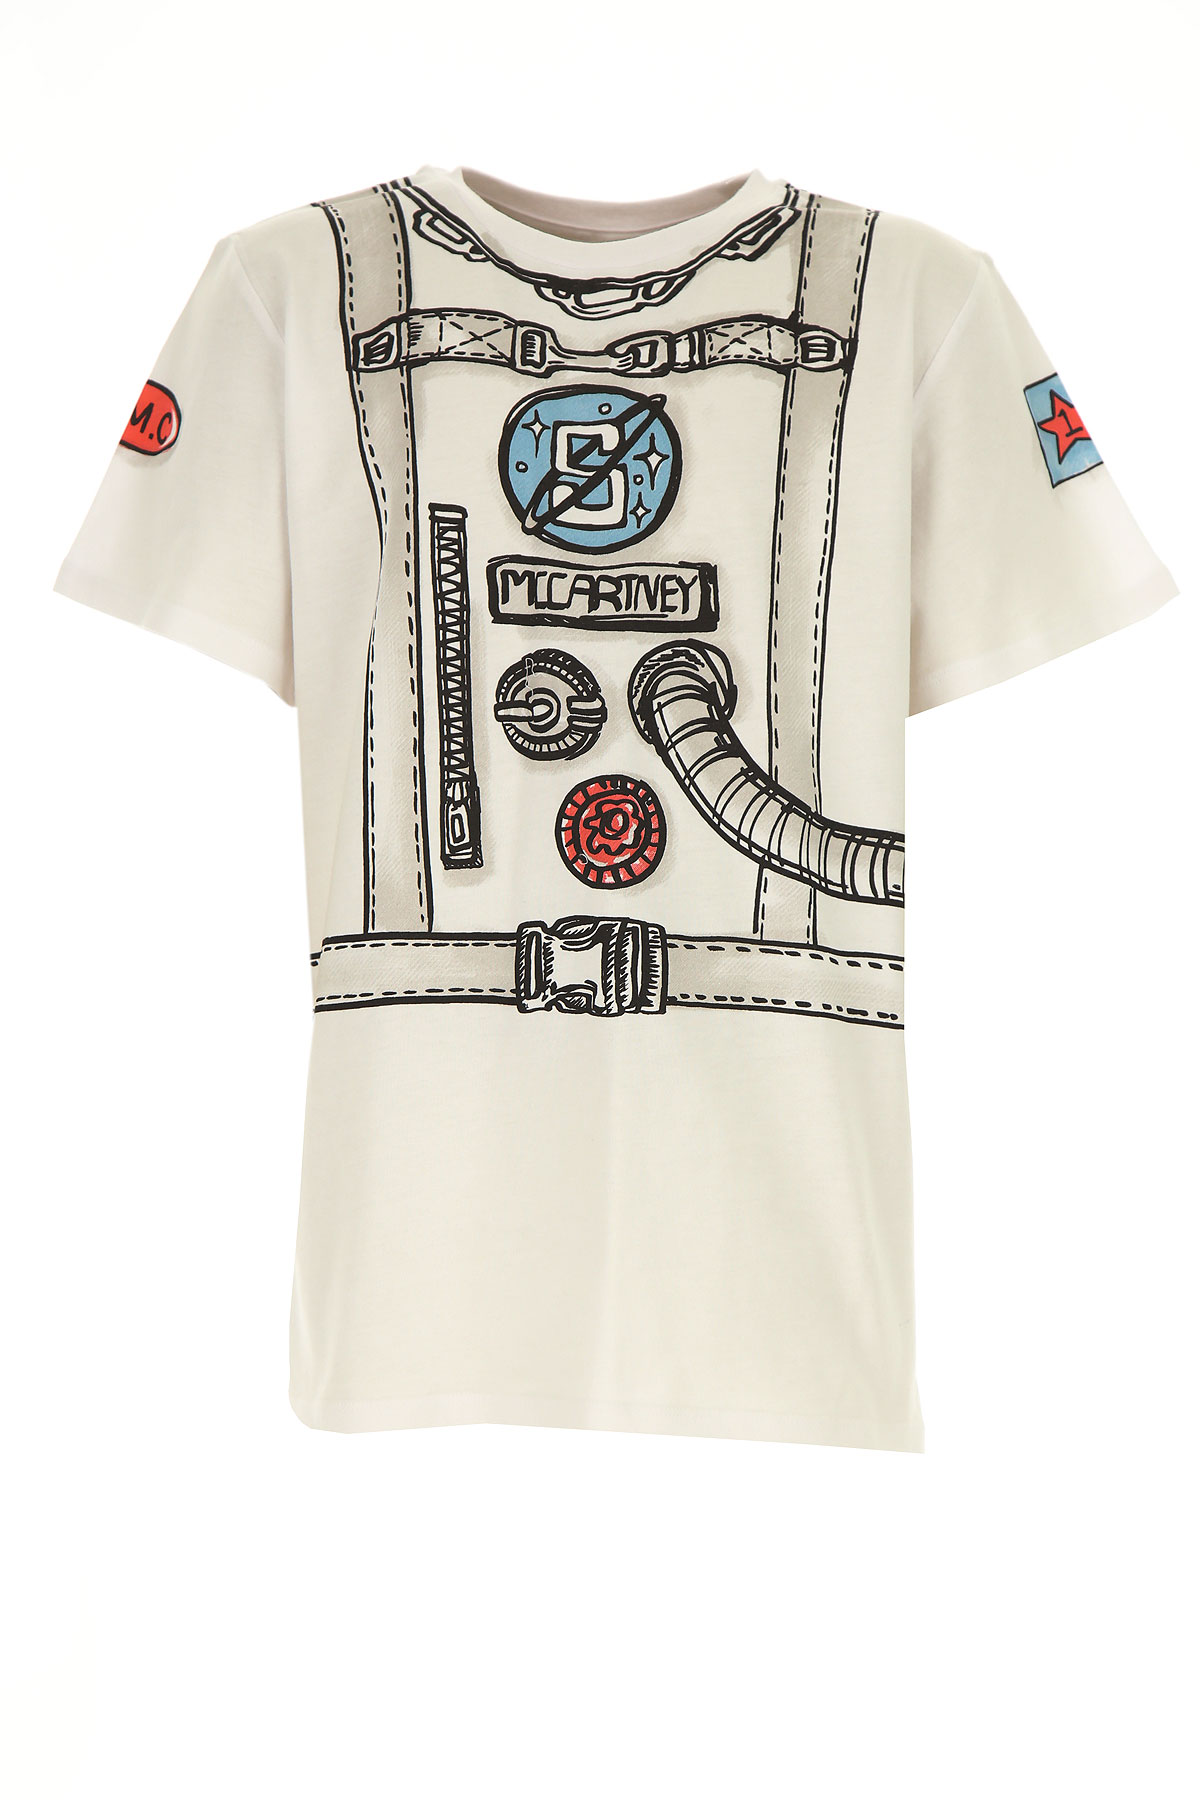 Stella McCartney Kinder T-Shirt für Jungen Günstig im Sale, Weiss, Baumwolle, 2017, 10Y 12Y 14Y 16Y 2Y 3Y 4Y 5Y 8Y